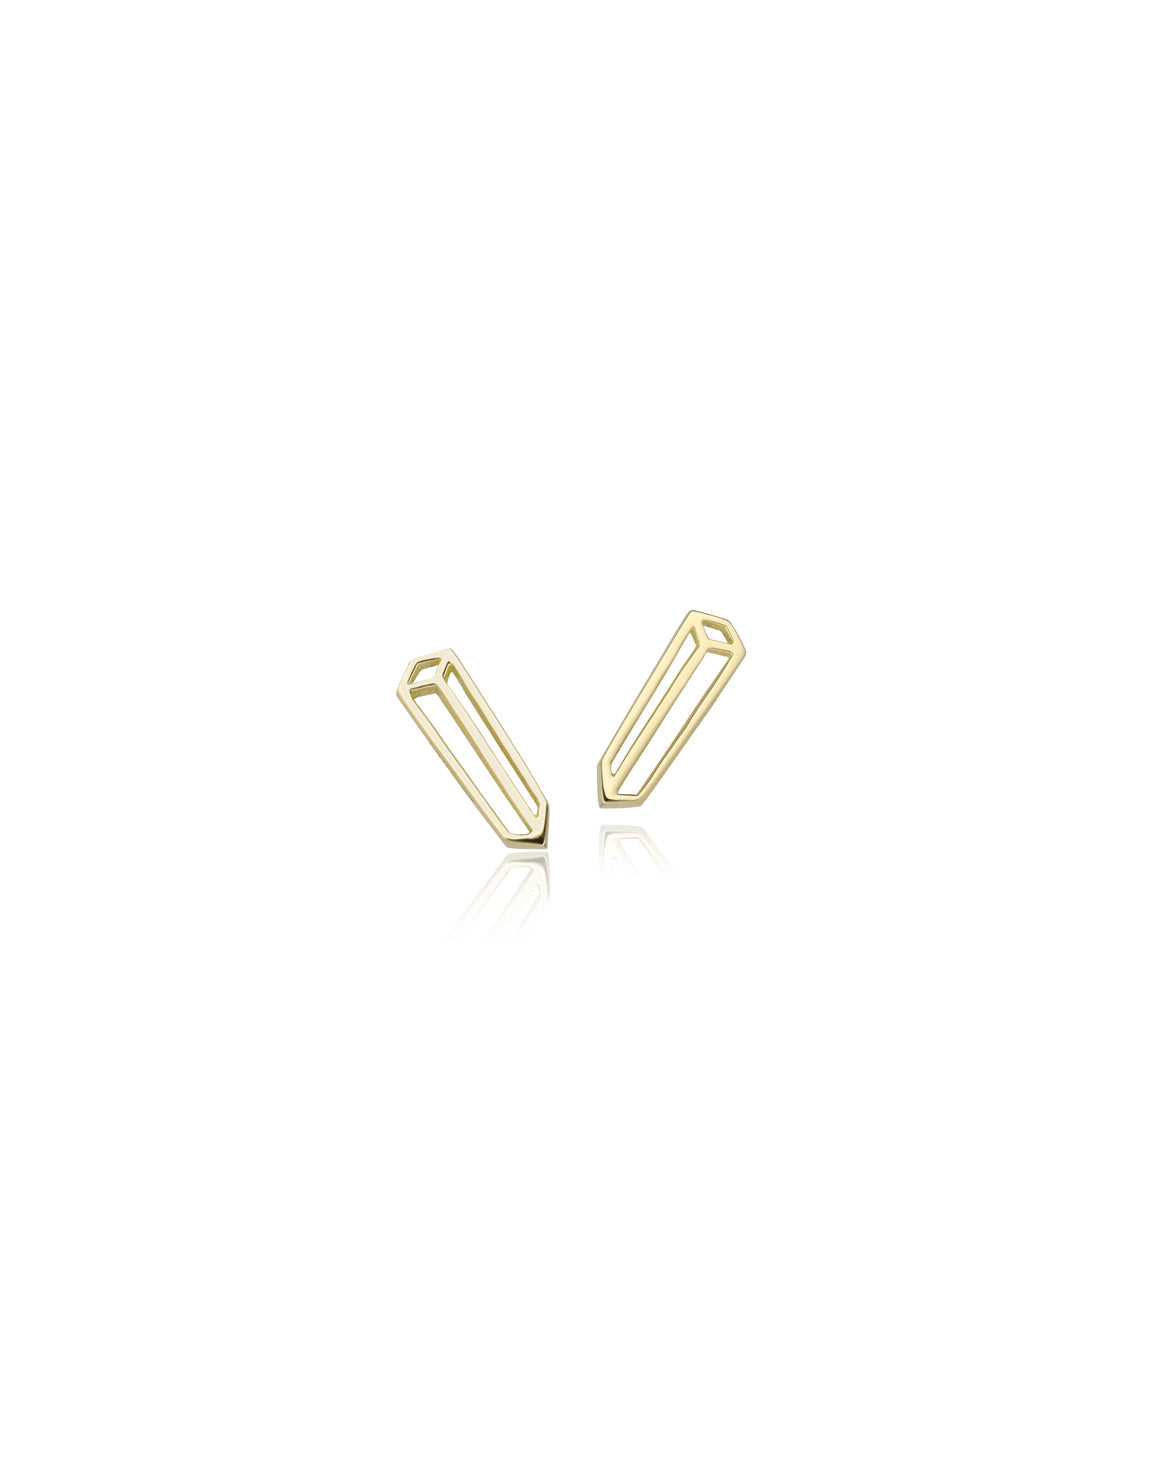 Long Cuboid Earrings - 18ct Gold